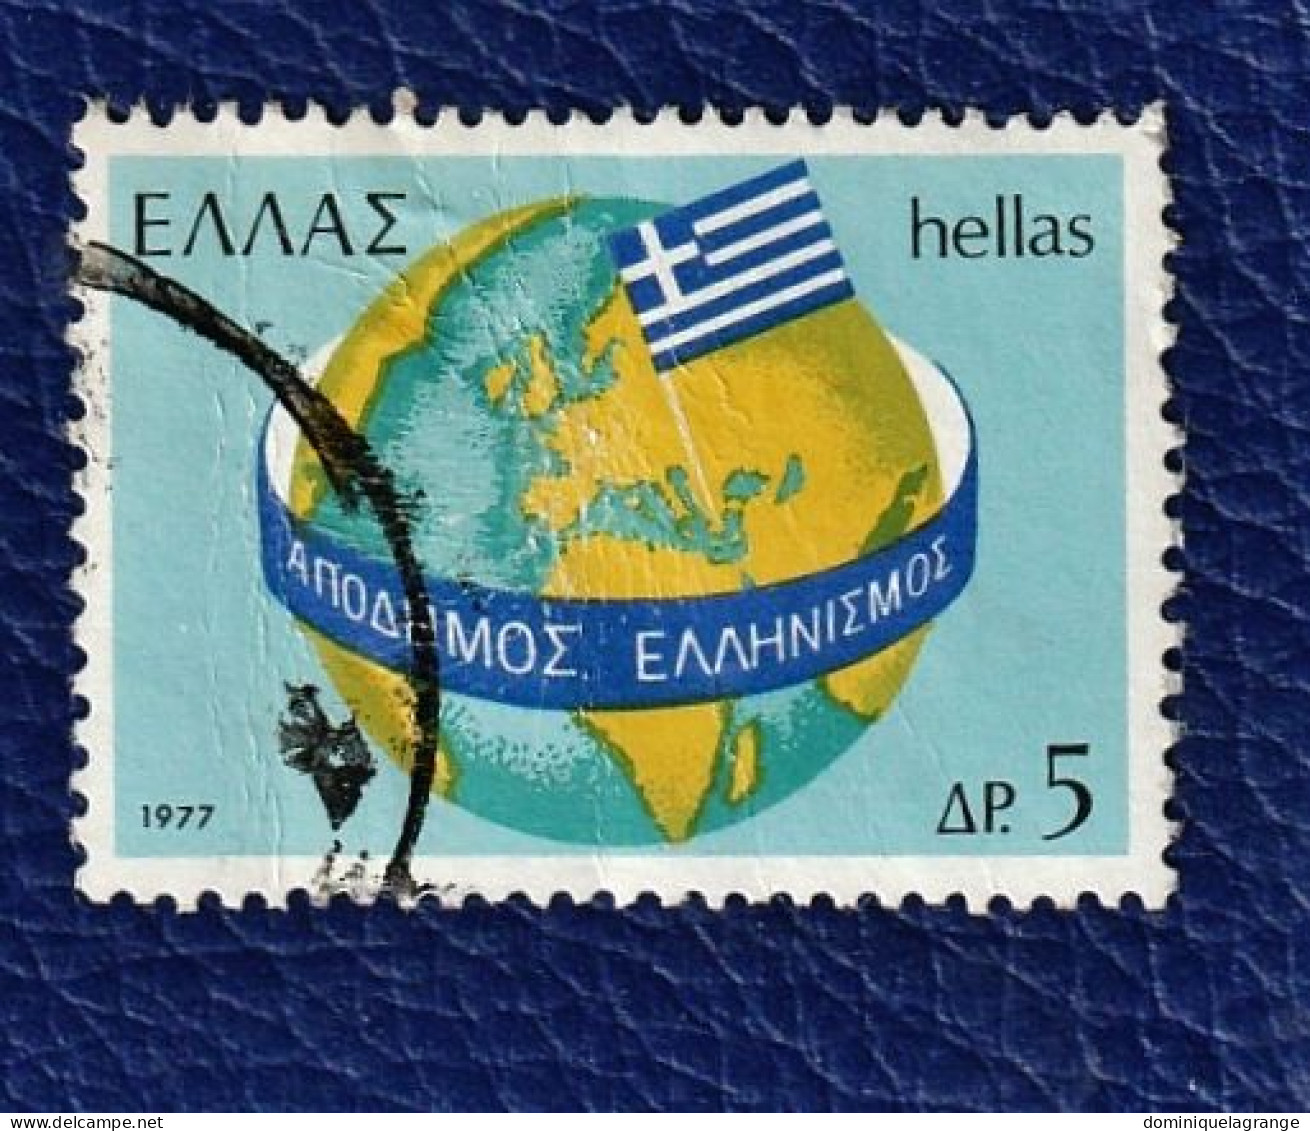 8 timbres de Grèce de 1966 à 1977